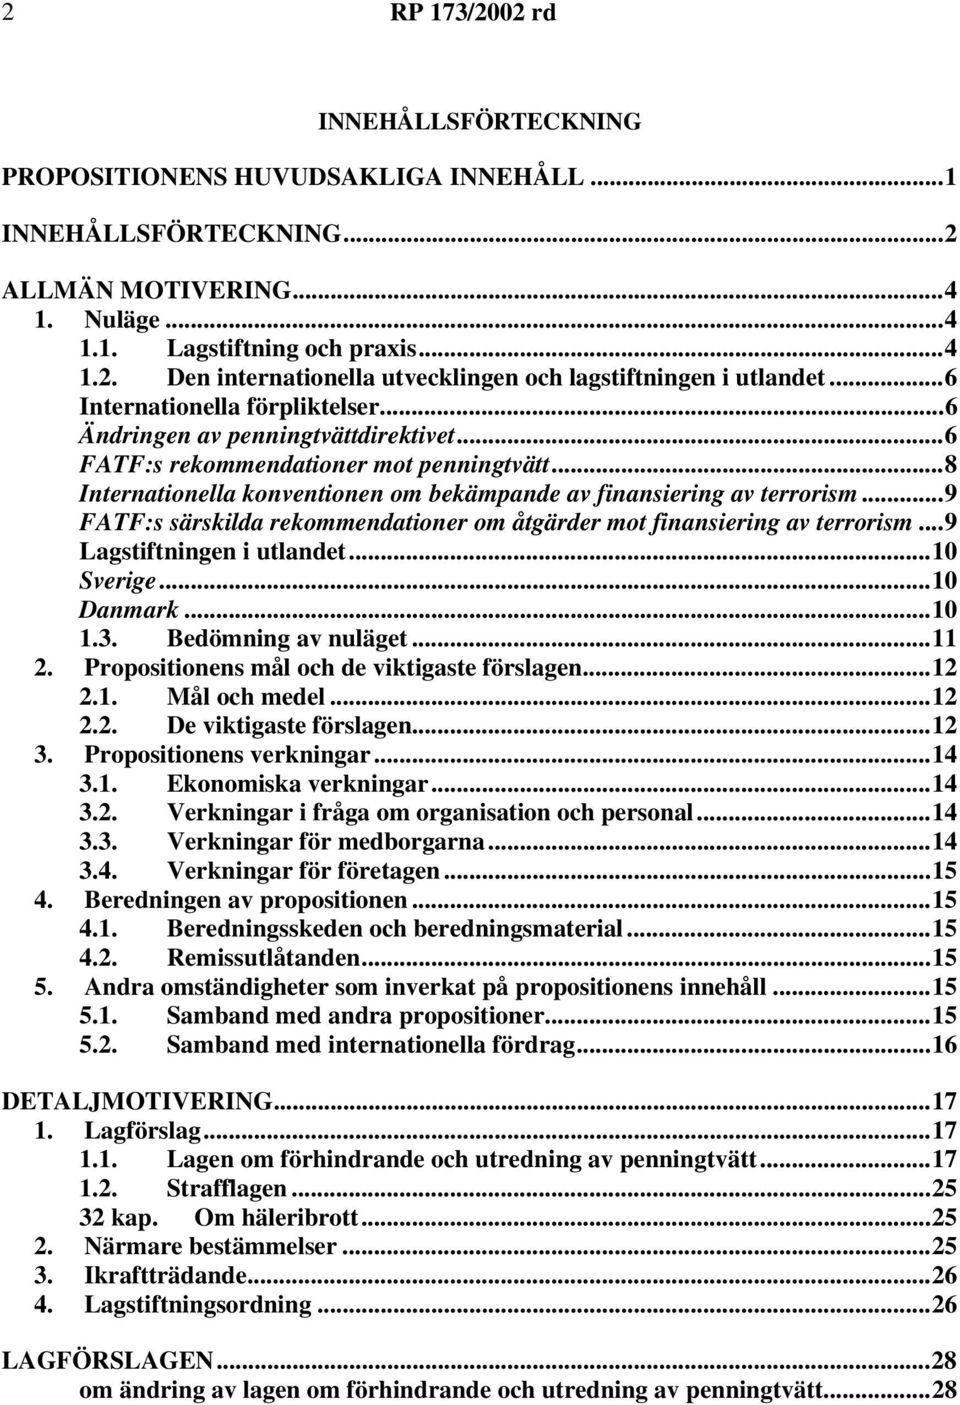 ..9 FATF:s särskilda rekommendationer om åtgärder mot finansiering av terrorism...9 Lagstiftningen i utlandet...10 Sverige...10 Danmark...10 1.3. Bedömning av nuläget...11 2.